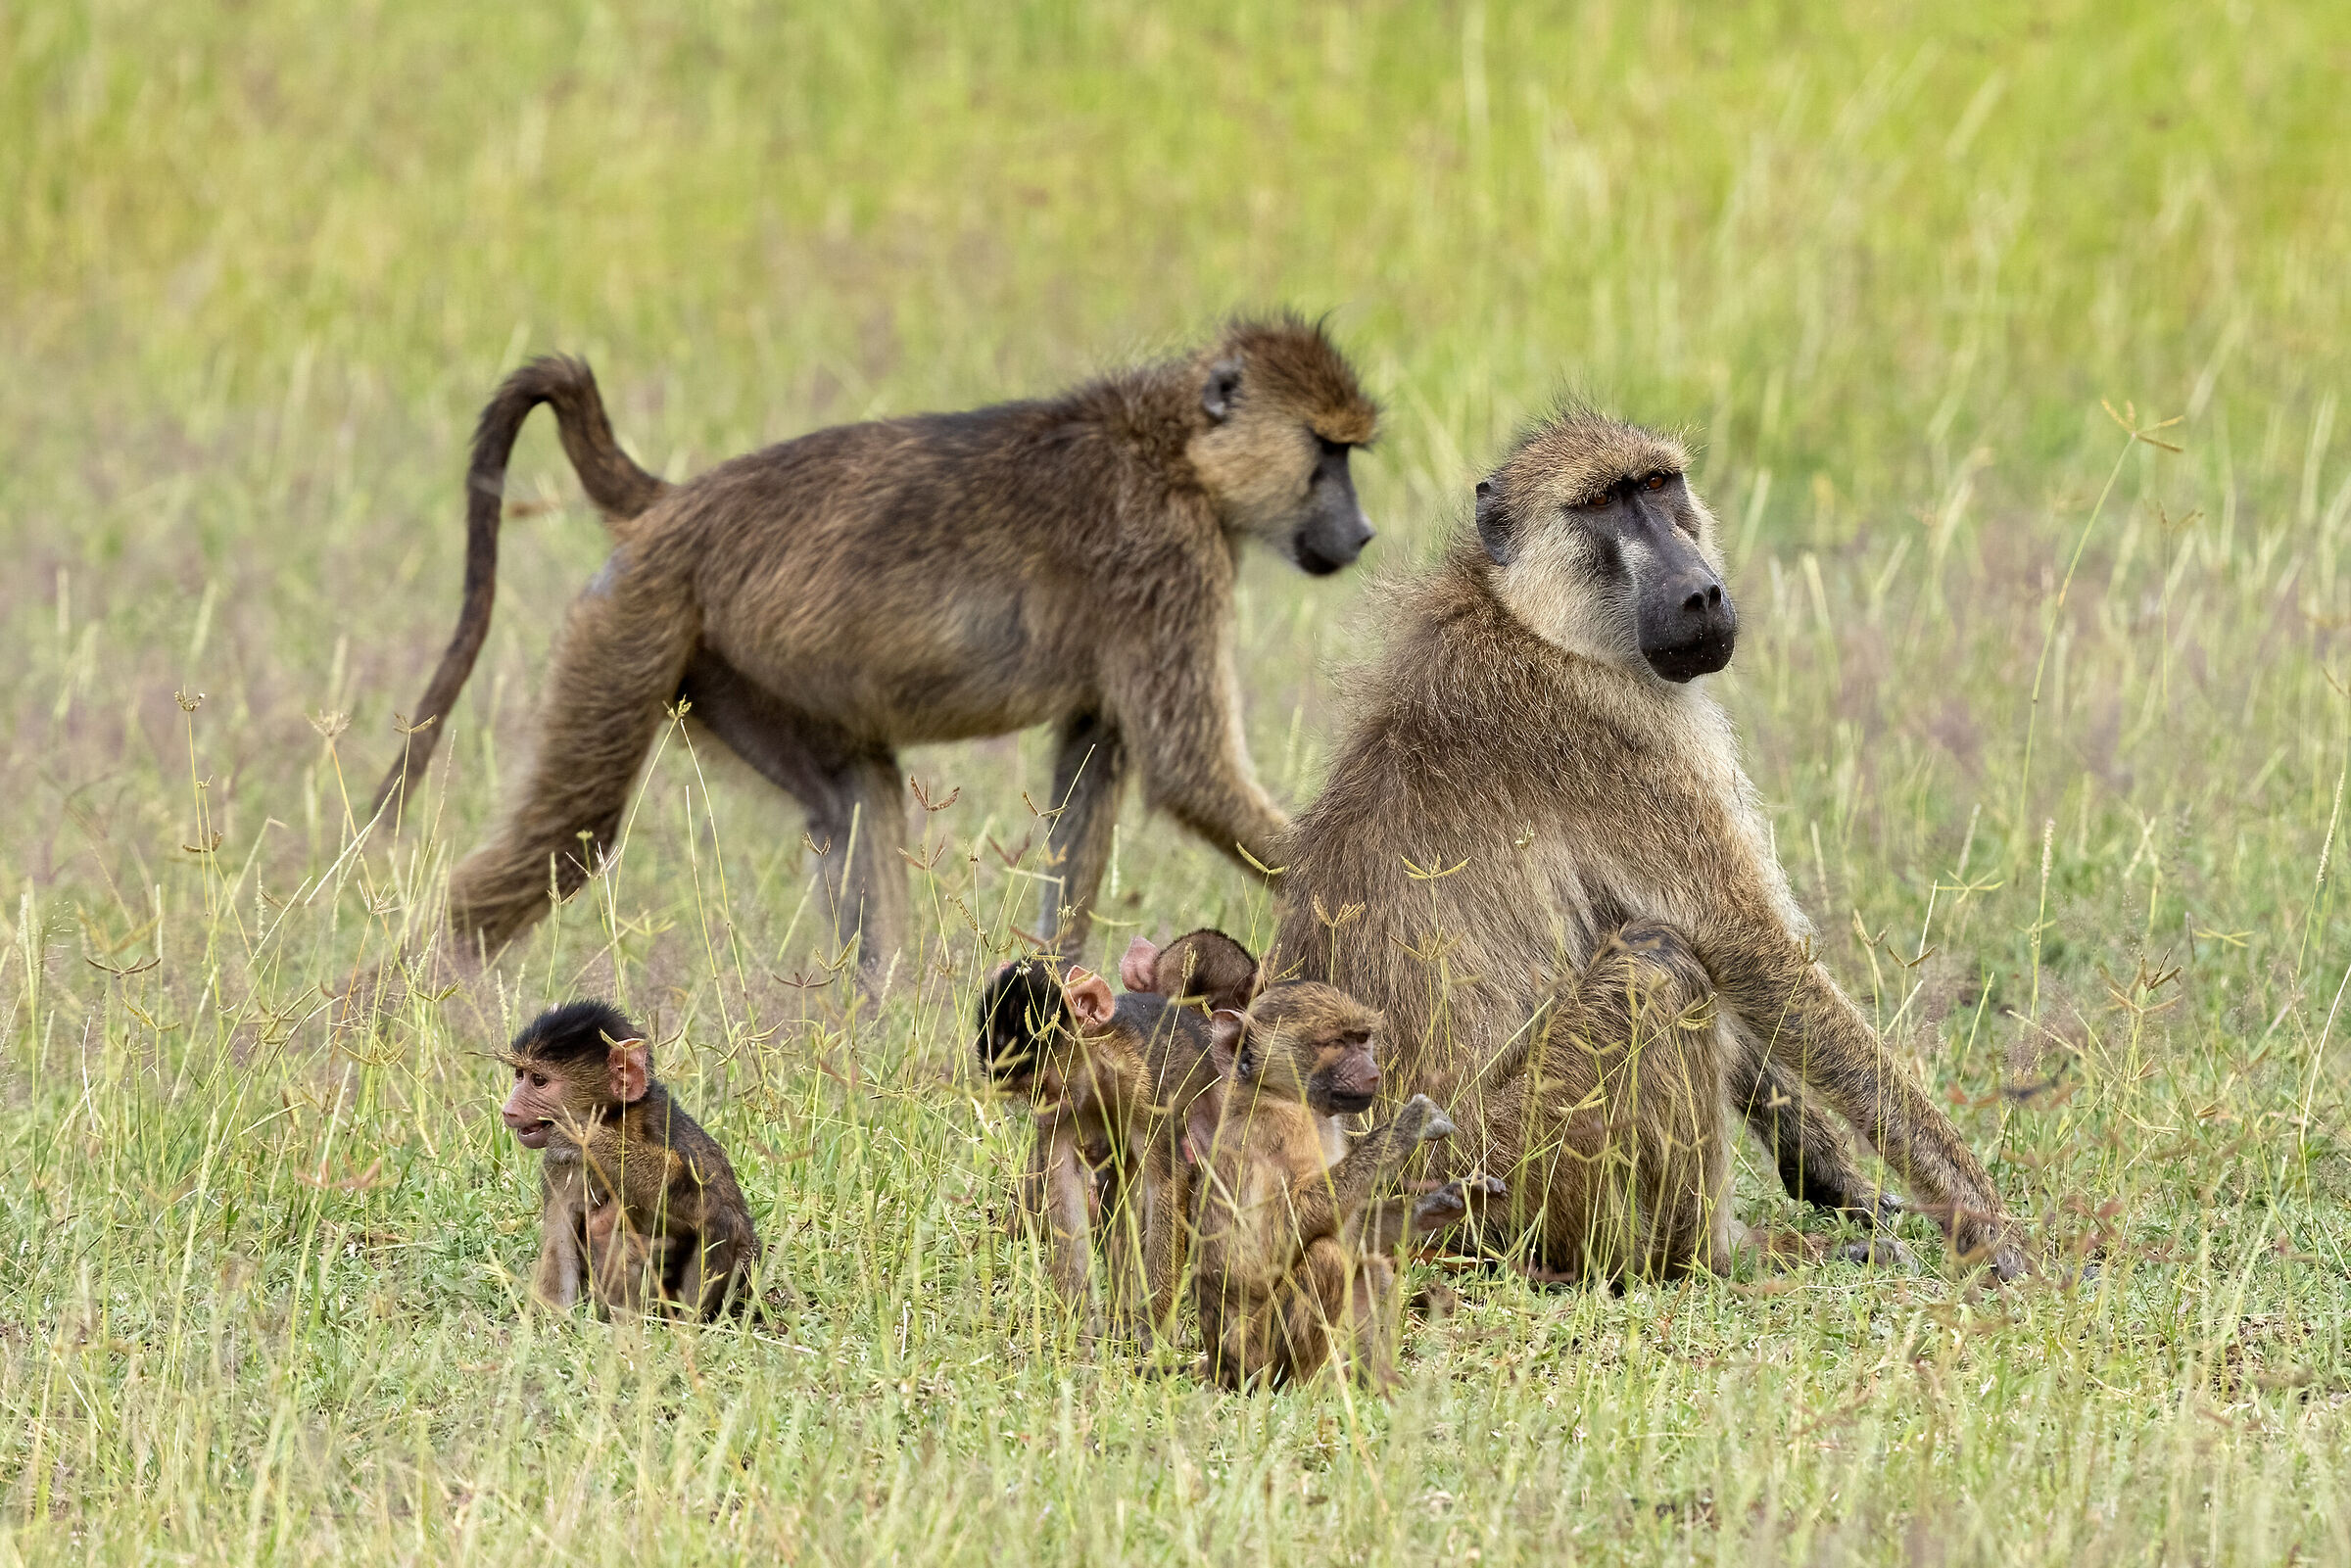 Family of monkeys...